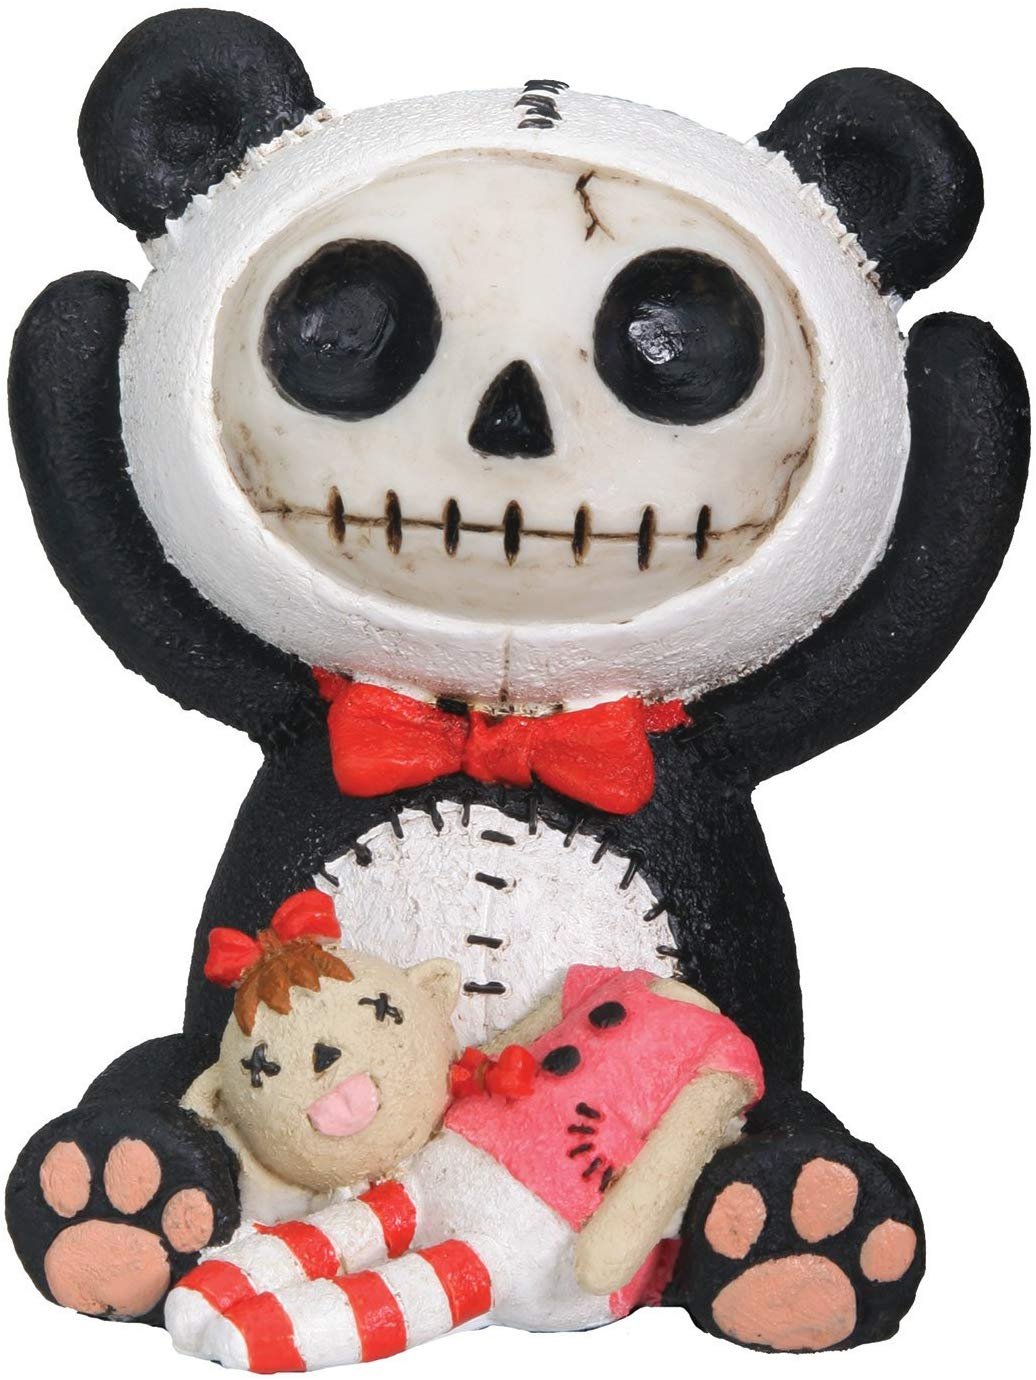 Furrybones Pandie Signature Skeleton in Innocent Panda Bear Costume with Beheaded Doll